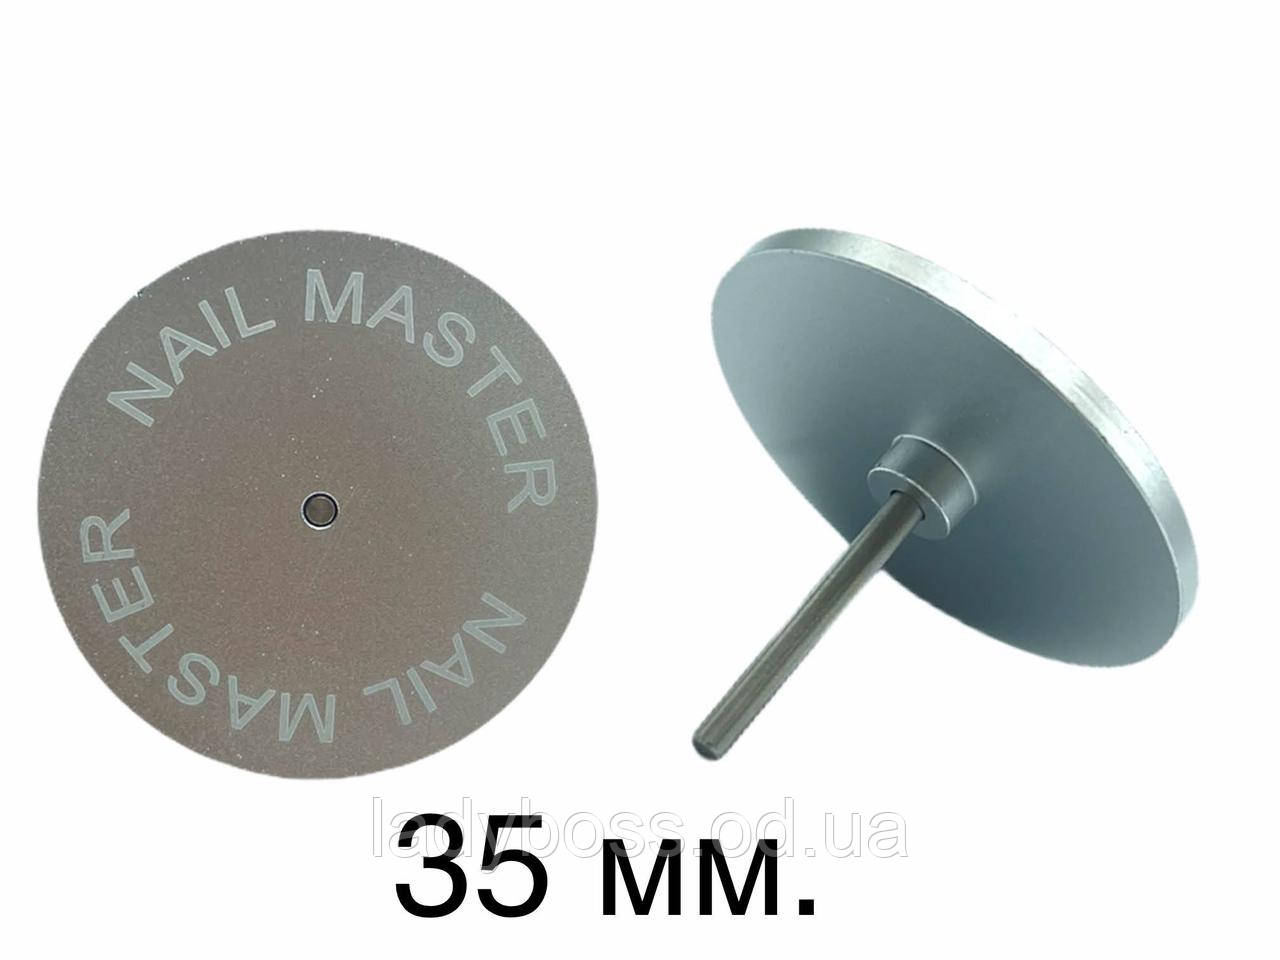 Металевий диск для педикюру (для апаратної обробки стоп і пальців ніг)  35 мм